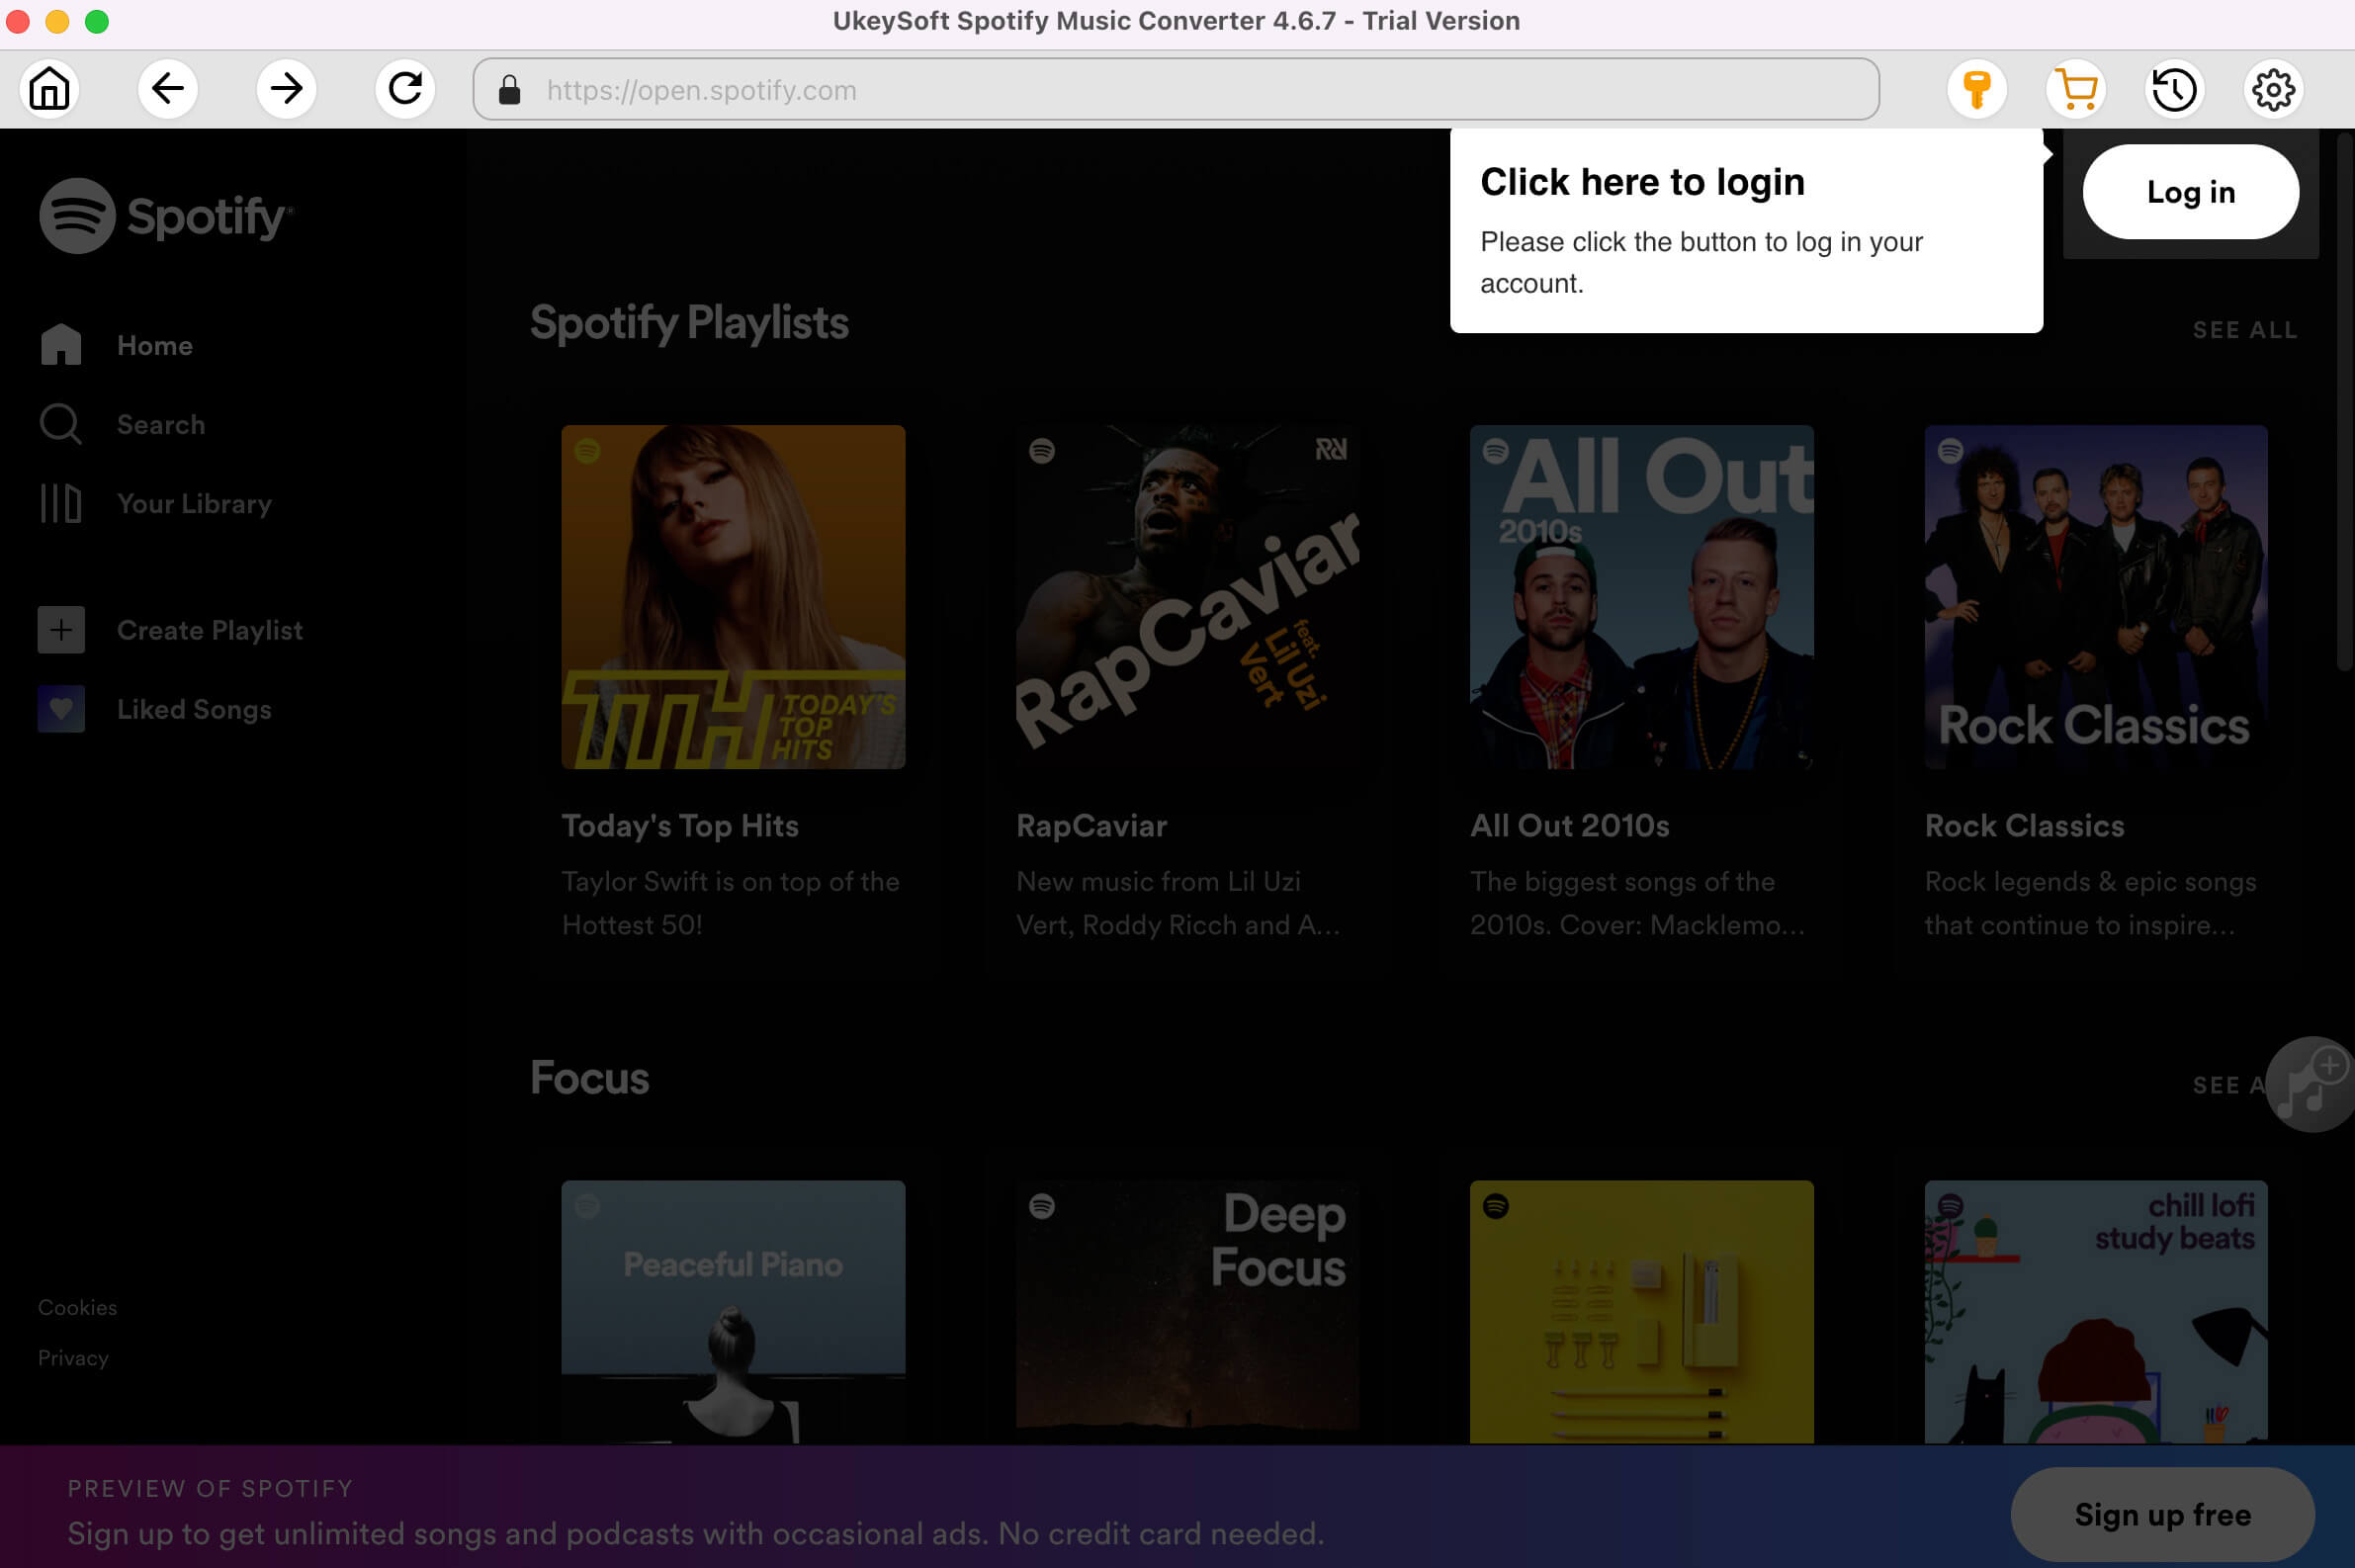 Import Spotify Music to UkeySoft Spotify Converter